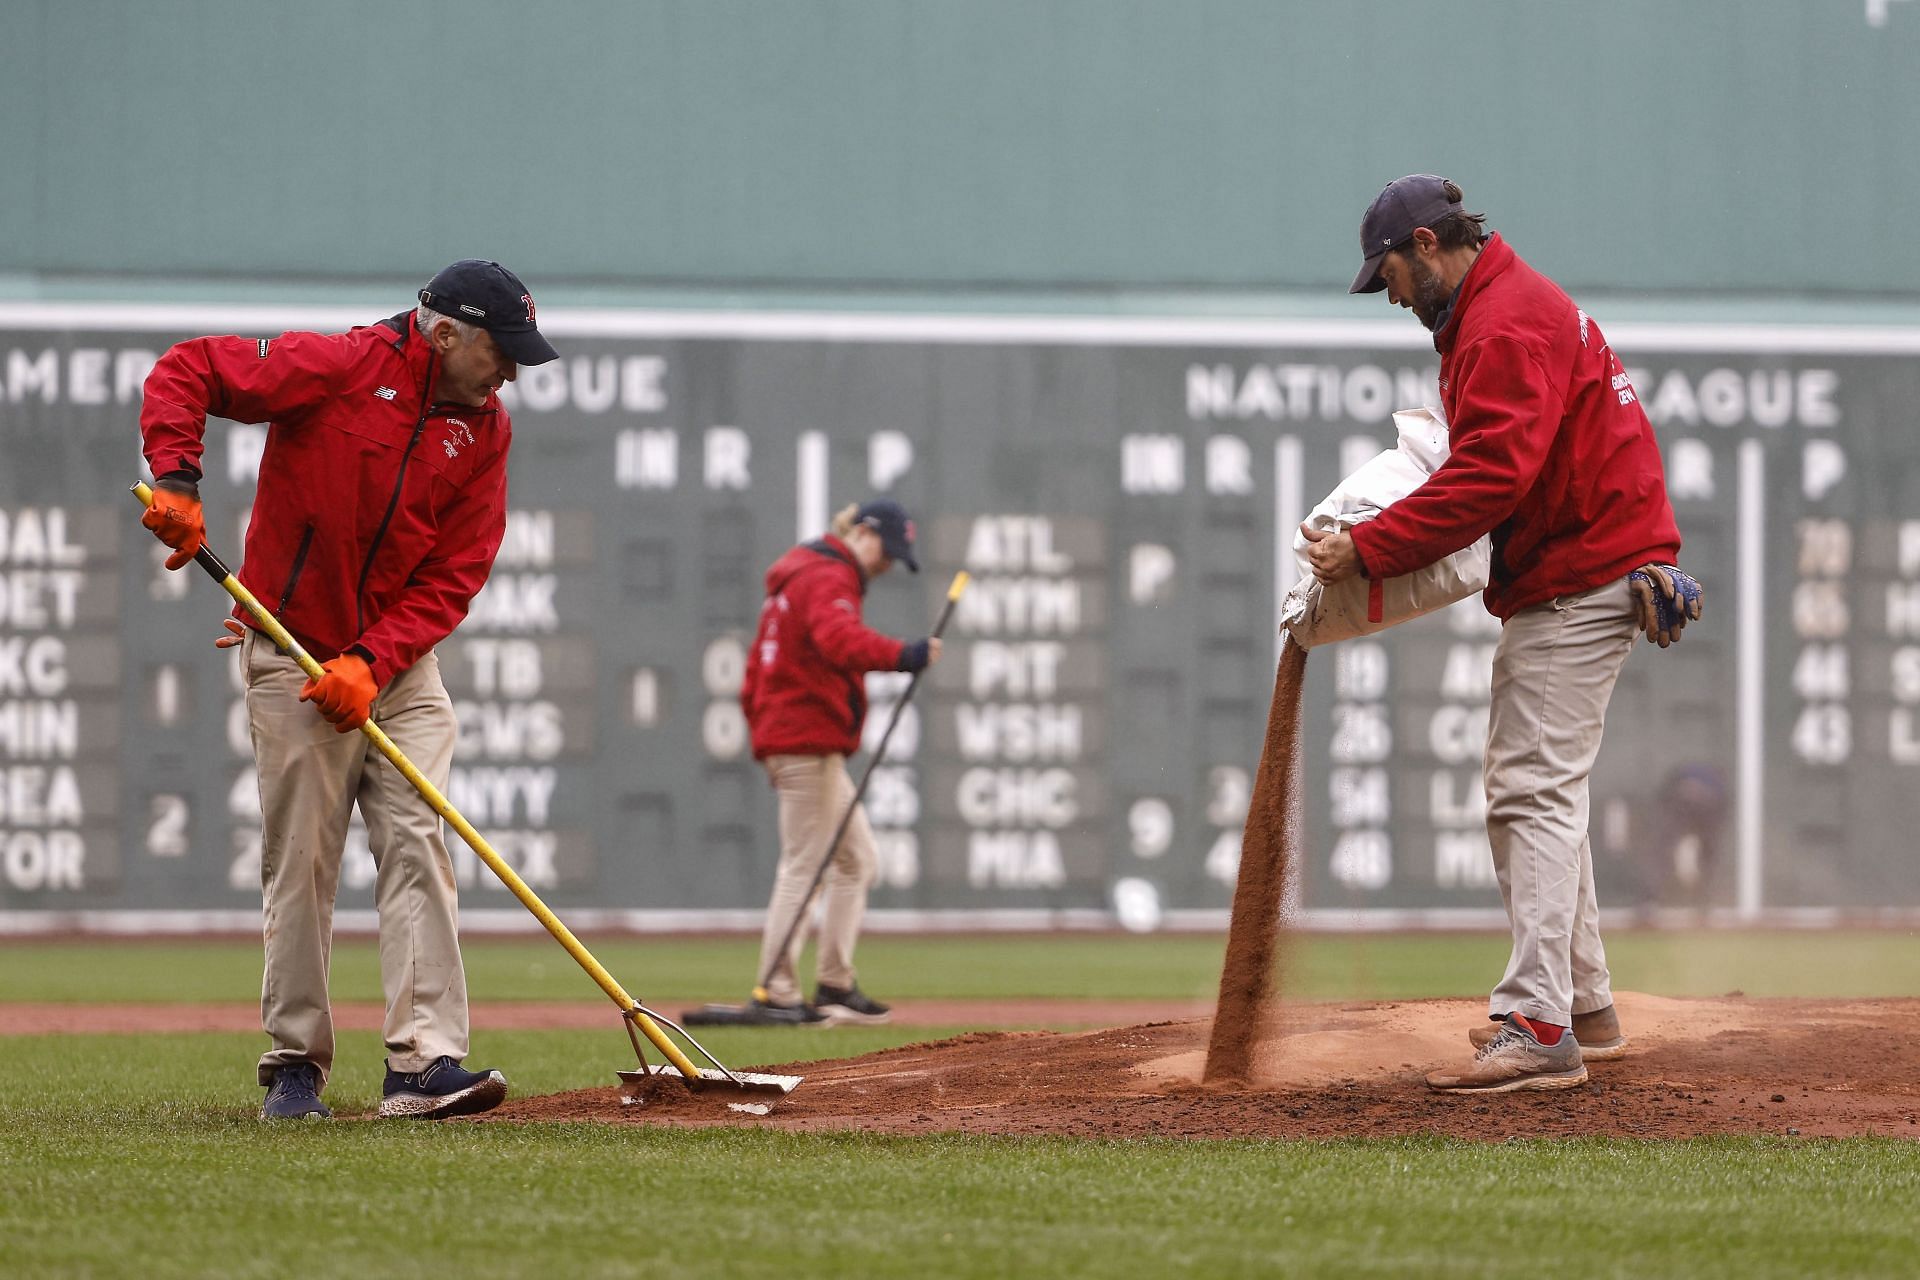 Boston Red Sox pitcher Matt Dermody Pride Month controversy